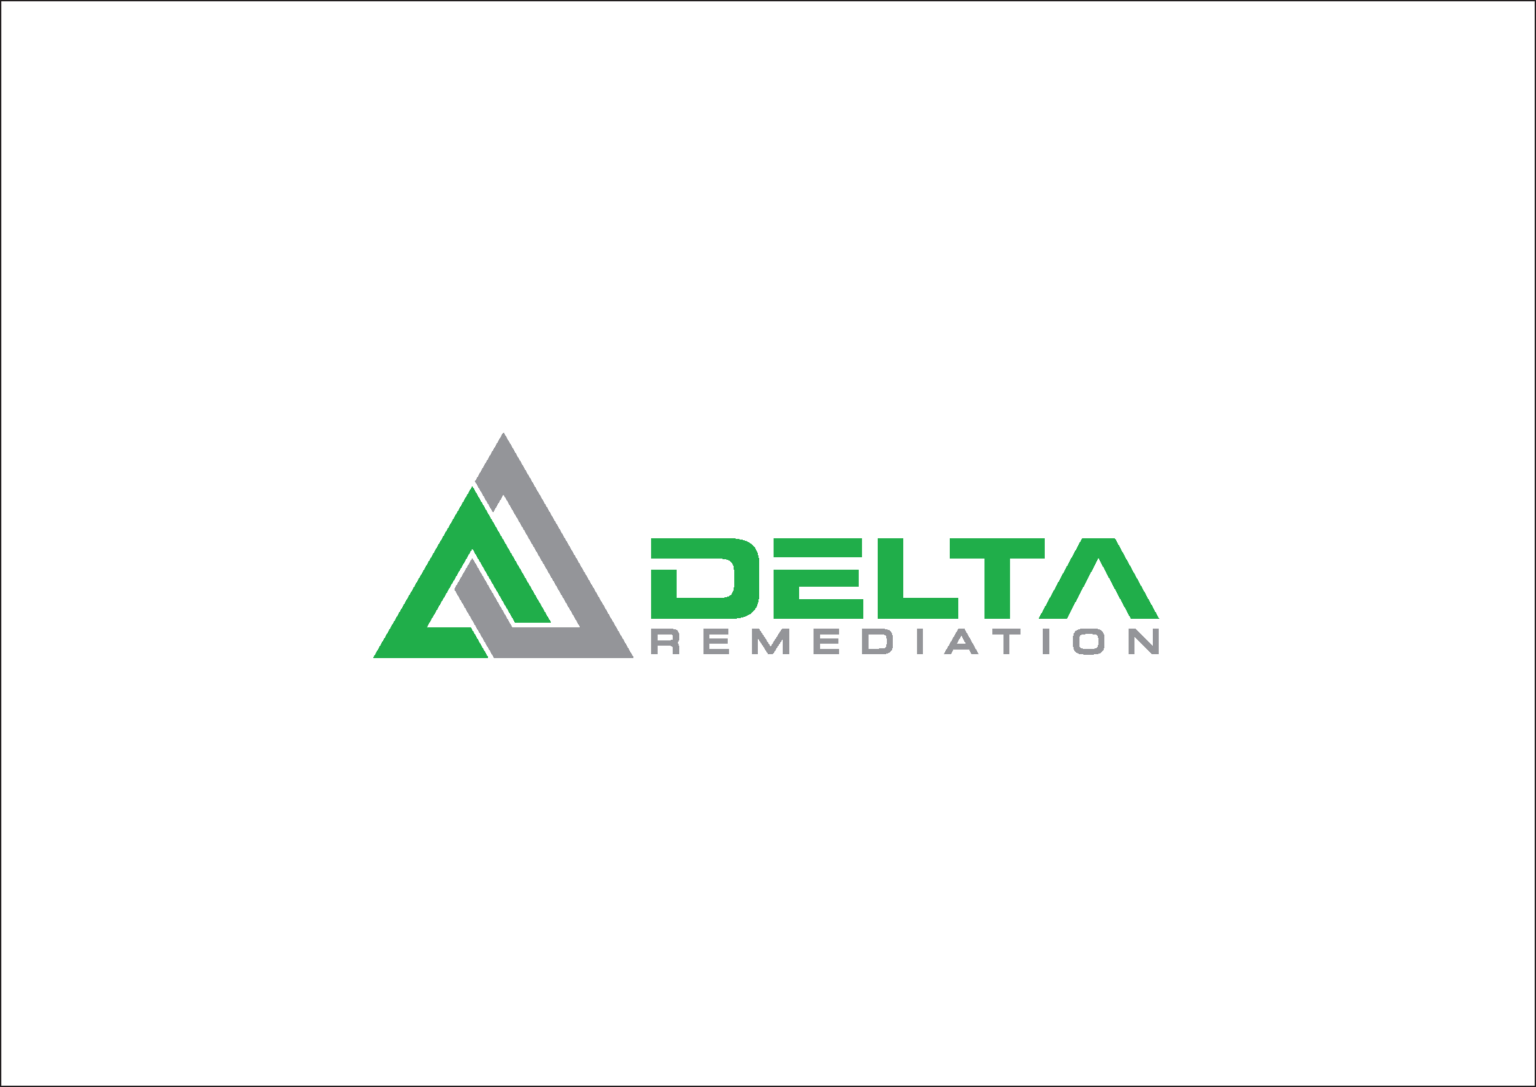 Delta-transparans-01-1536x1087-1.png